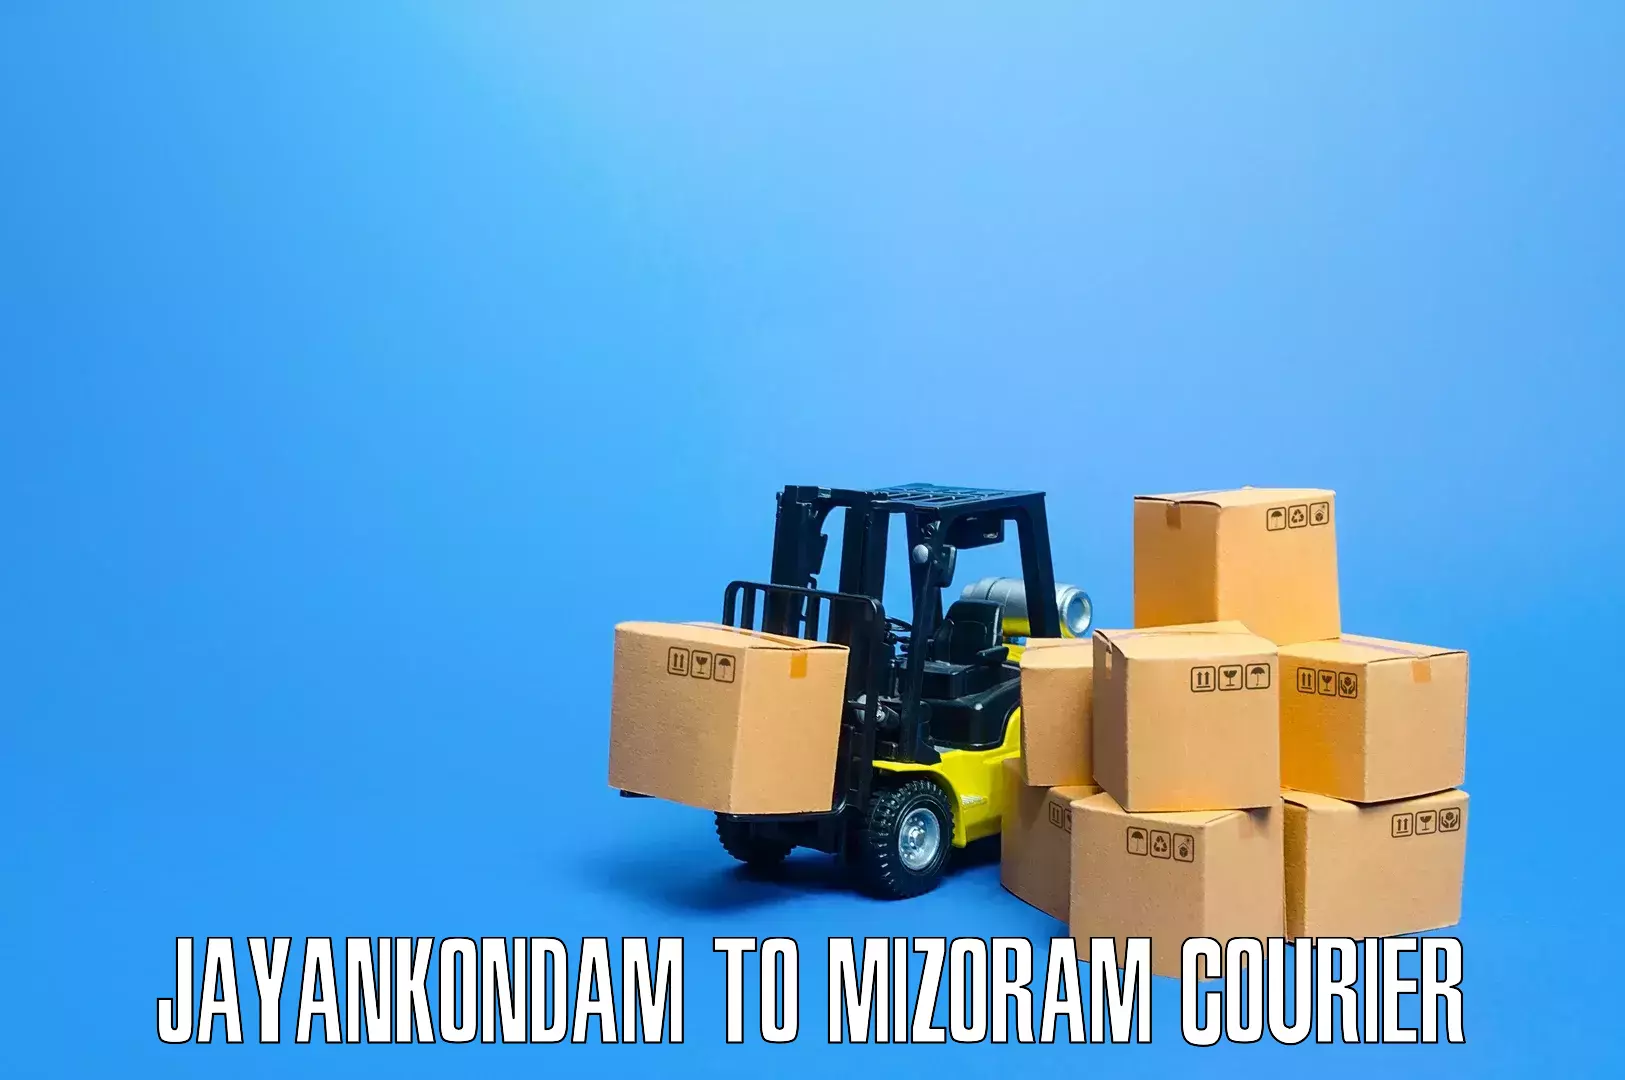 Professional furniture moving Jayankondam to Saitual